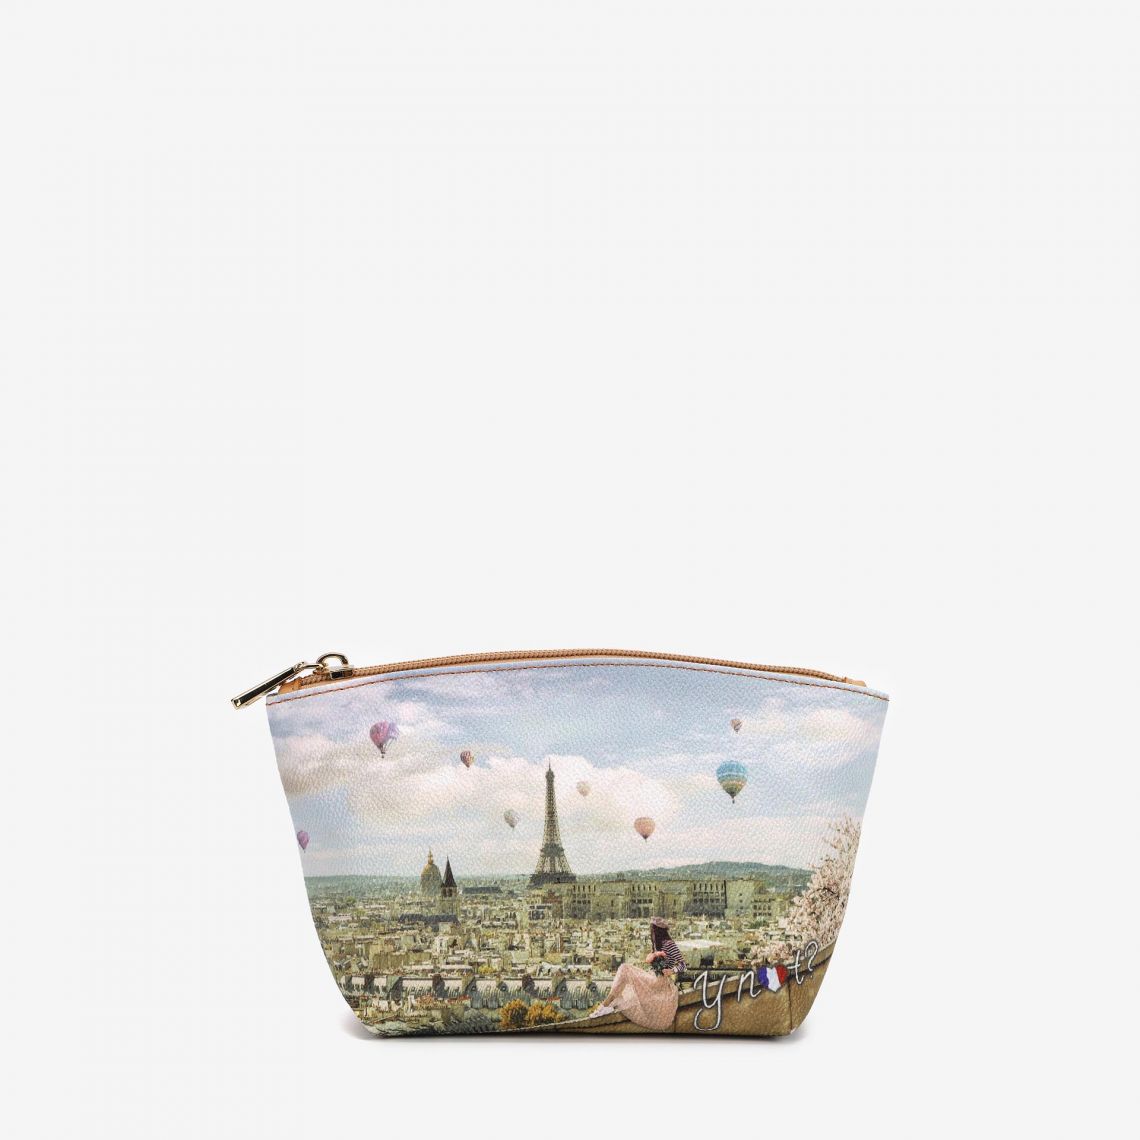 (image for) borse sconti Beauty Case Montgolfiere borse in saldo